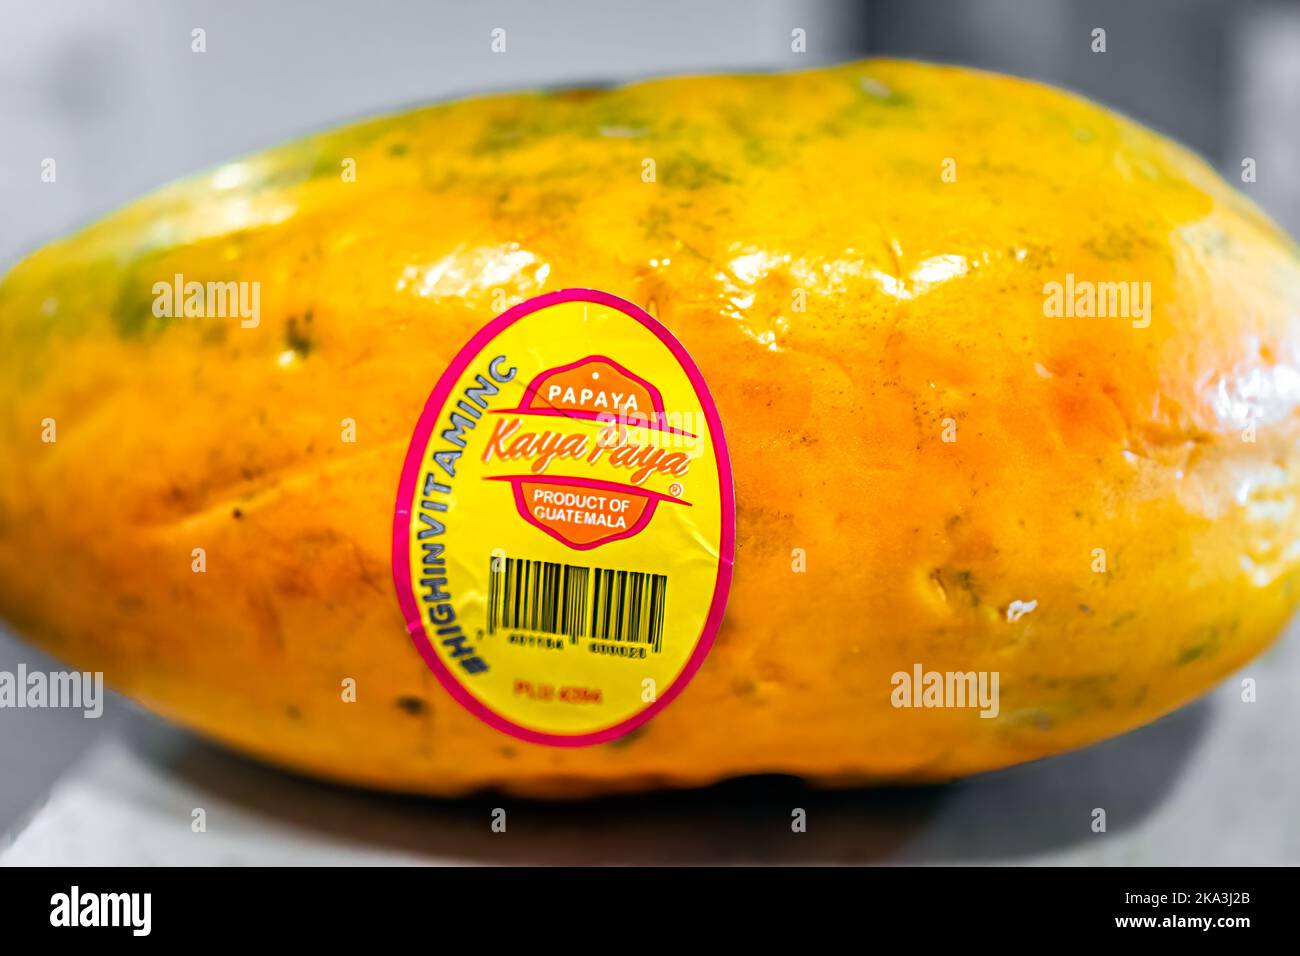 Napoli, USA - 25 marzo 2022: Kaya Paya papaya matura frutta intera cruda su tavola, un prodotto del Guatemala importato come varietà di tainung ricca di vitamina C. Foto Stock